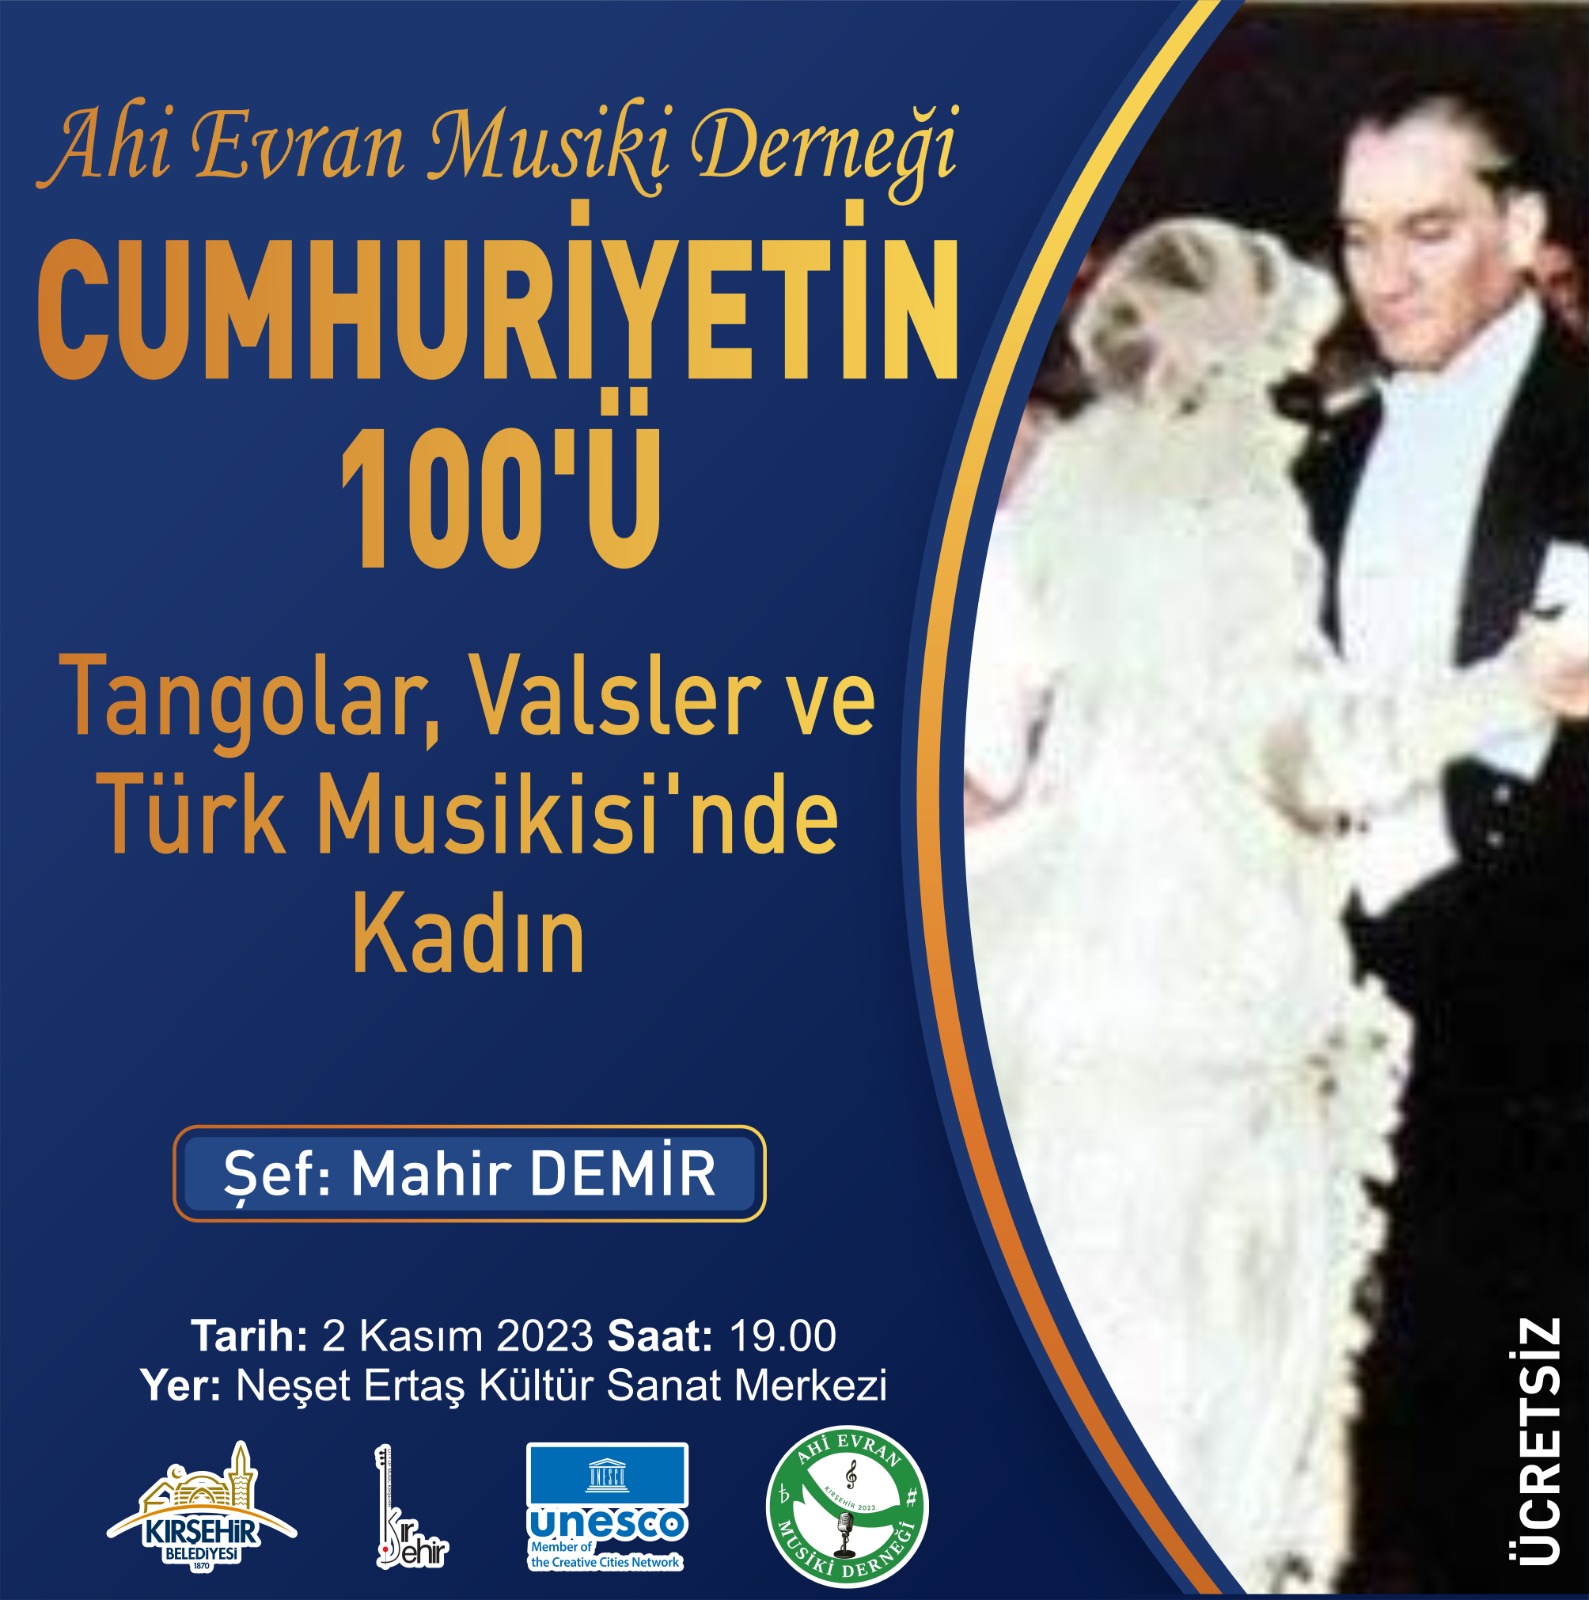 AHİ EVRAN MUSİKİ DERNEĞİ "CUMHURİYET'İN 100'Ü" KONSERİ